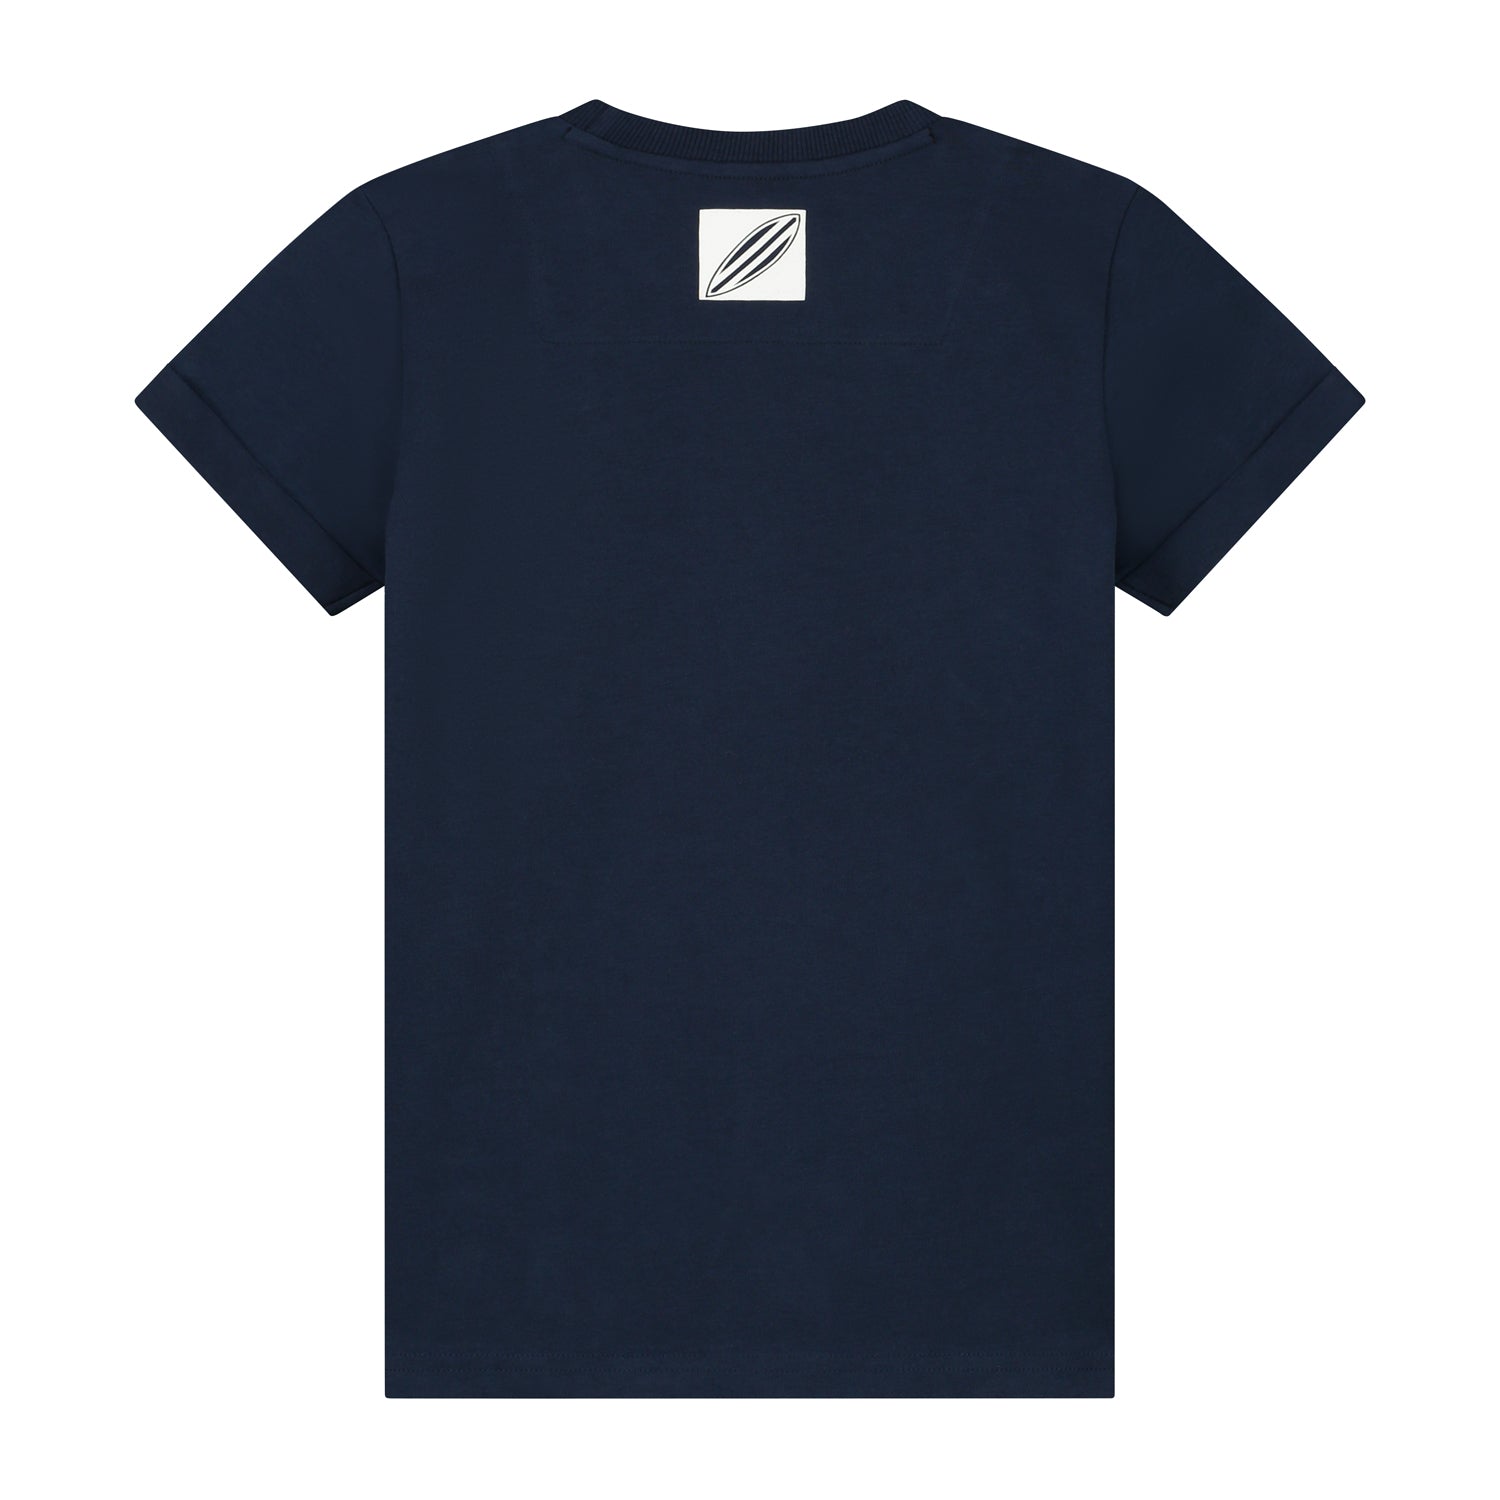 Skurk T-shirt Tristen Dark Blue